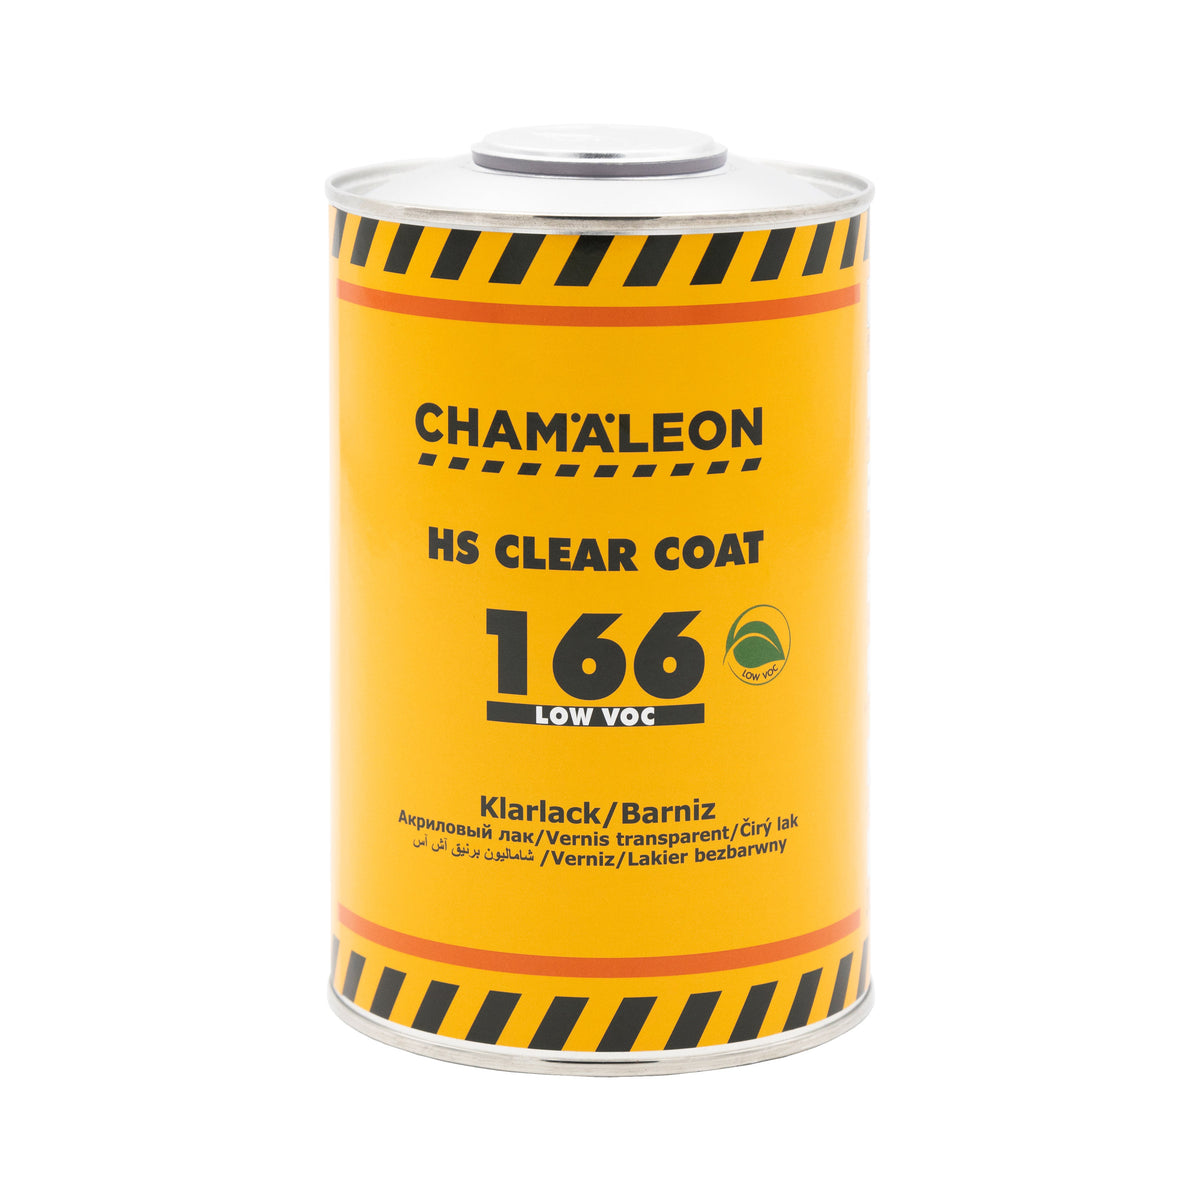 CHAMALEON HS 2K Clear Coat LOW VOC 166